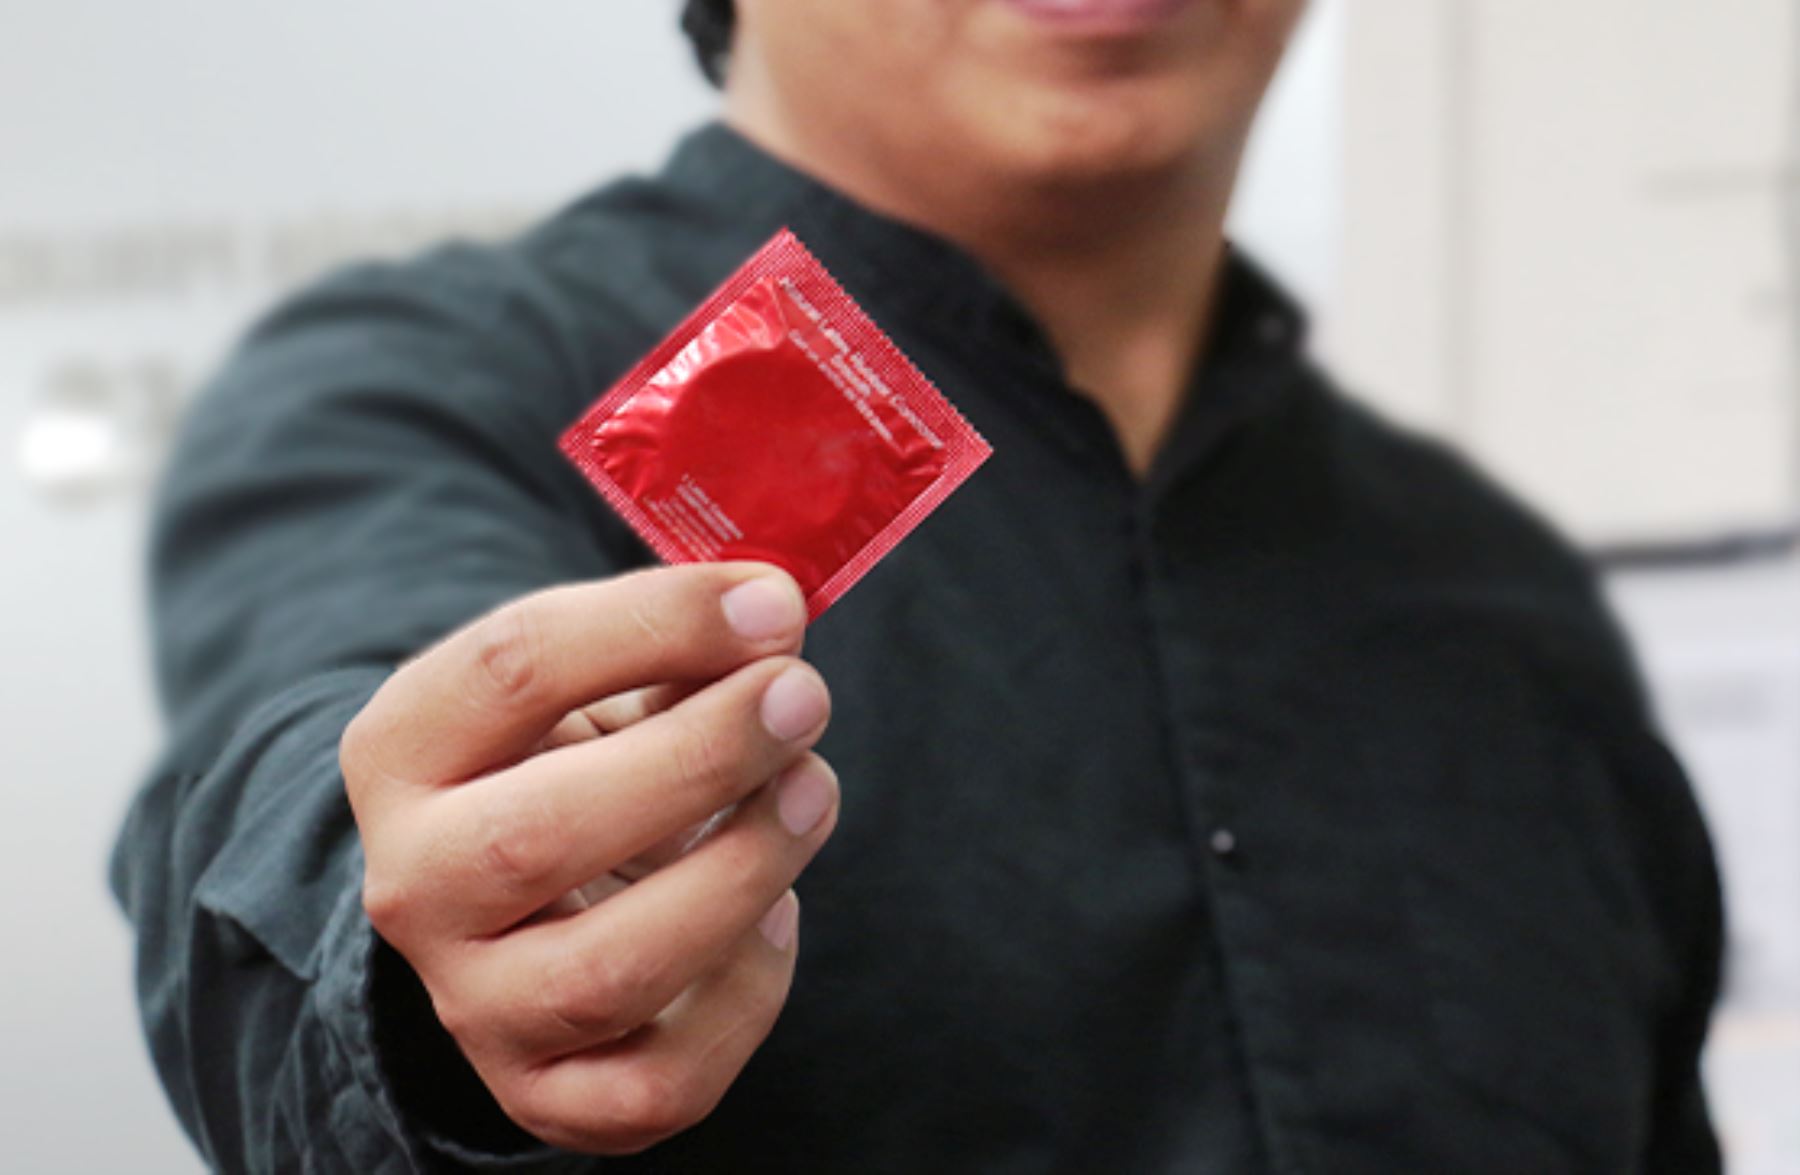 Solo el 19% de la población utiliza el preservativo de forma responsable